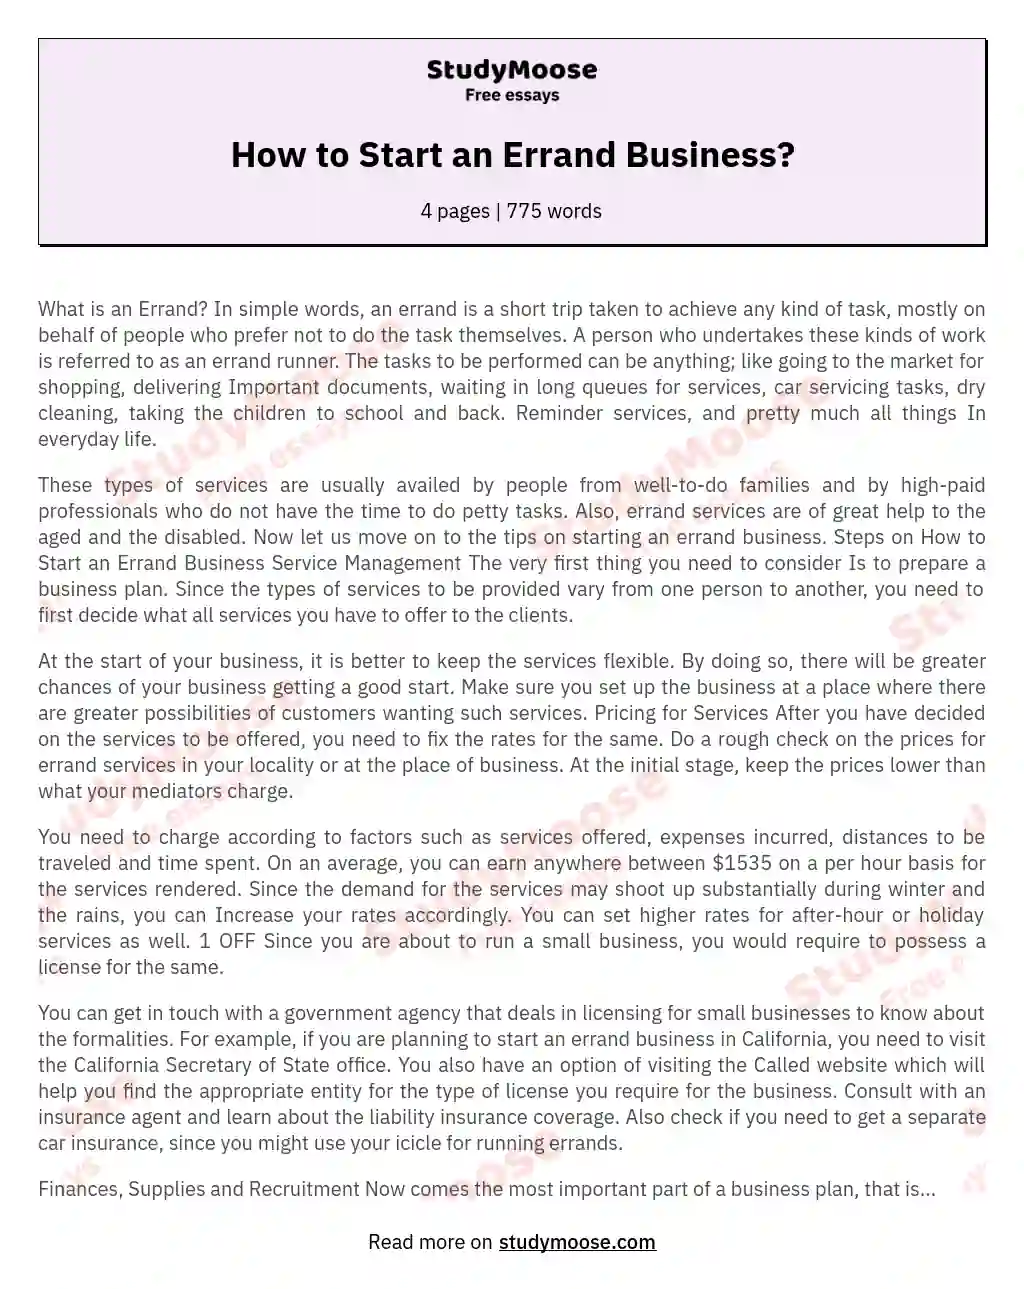 How to Start an Errand Business? essay